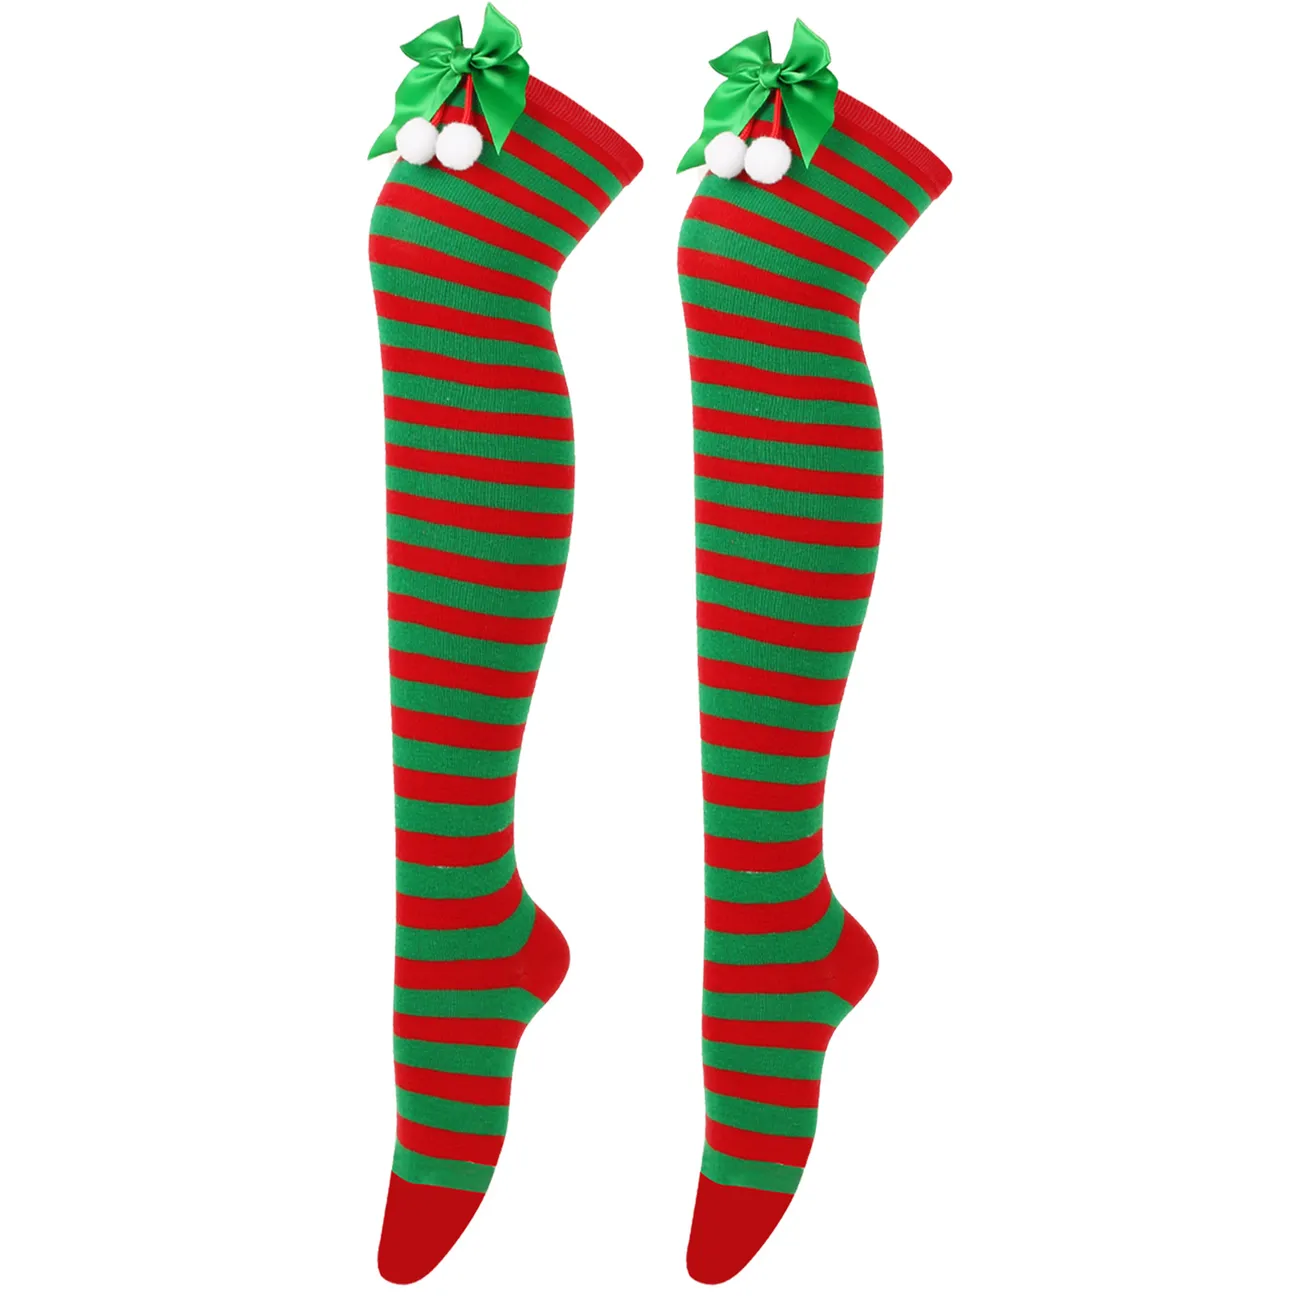 Calze natalizie in pelliccia di fiocco stile genitore-figlio Verde/Bianco/Rosso big image 1